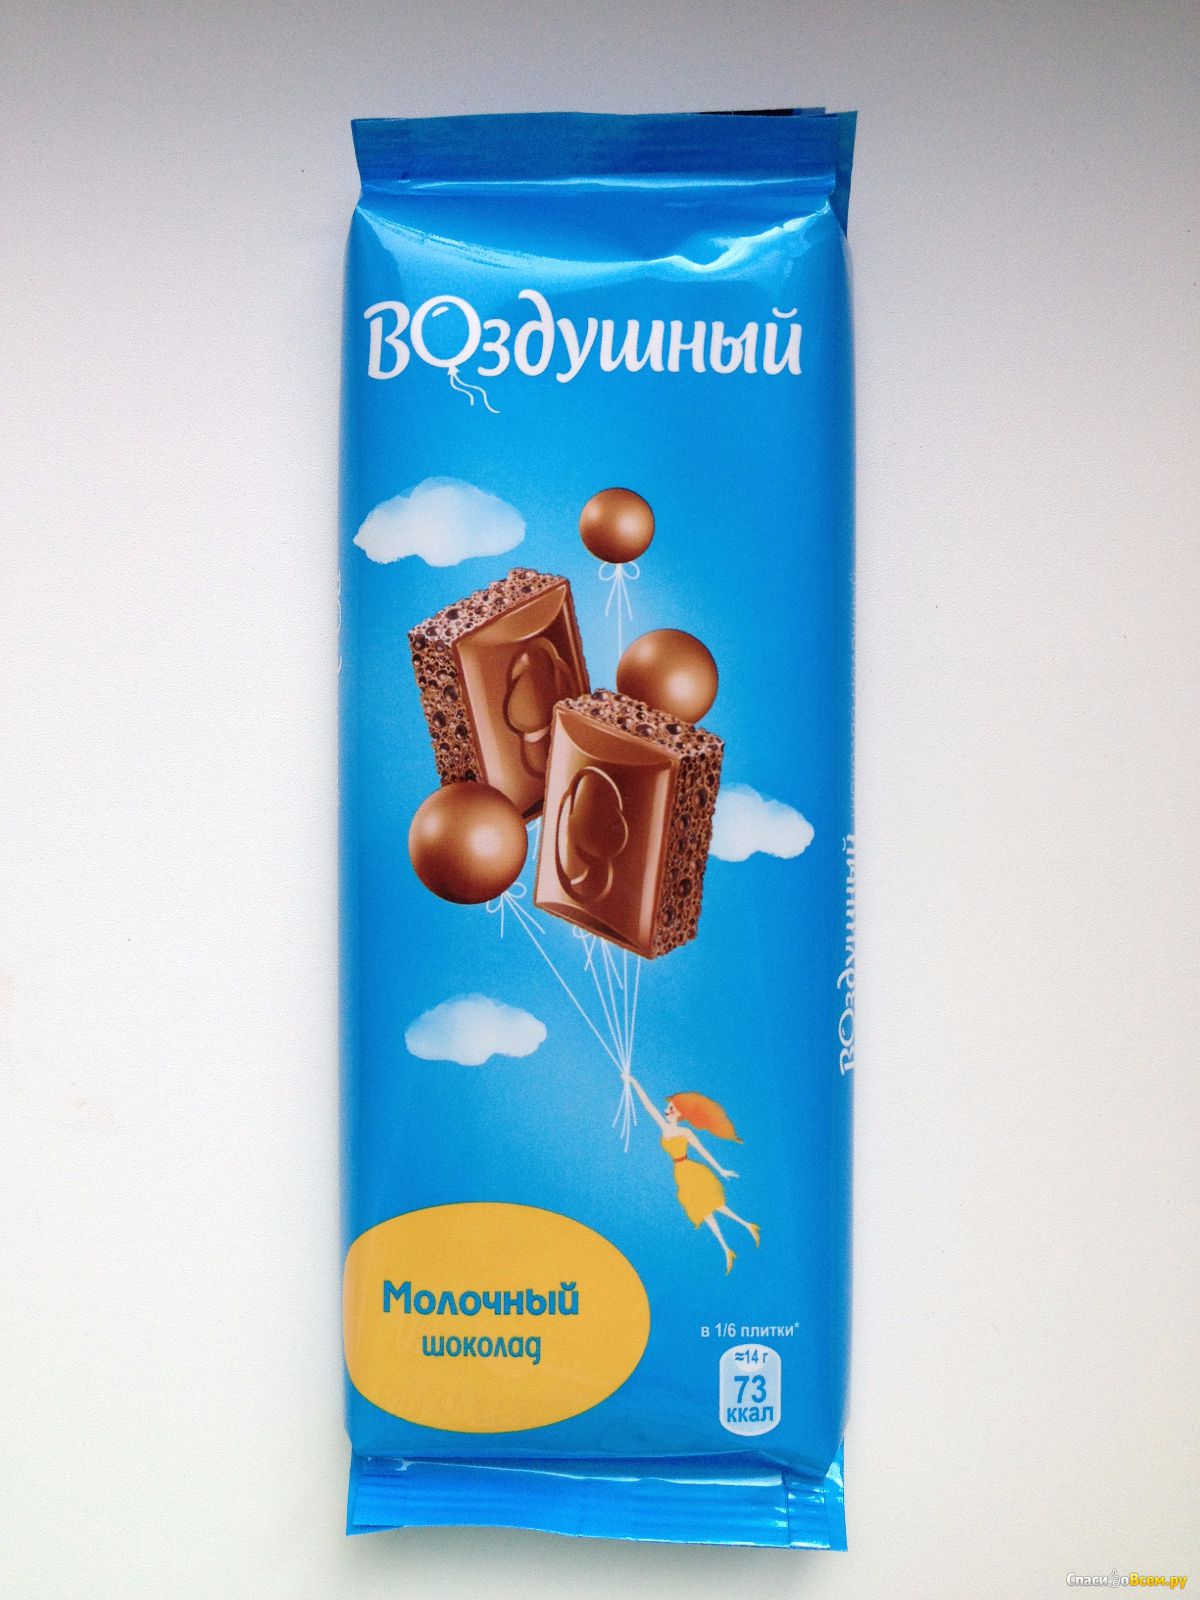 Купить шоколад воздушный. Шоколад воздушный молочный пористый 85гр. Шоколад воздушный белый пористый 85гр. Шоколад воздушный, белый 85 гр. Шоколад воздушный 85гр молочный 1/20.